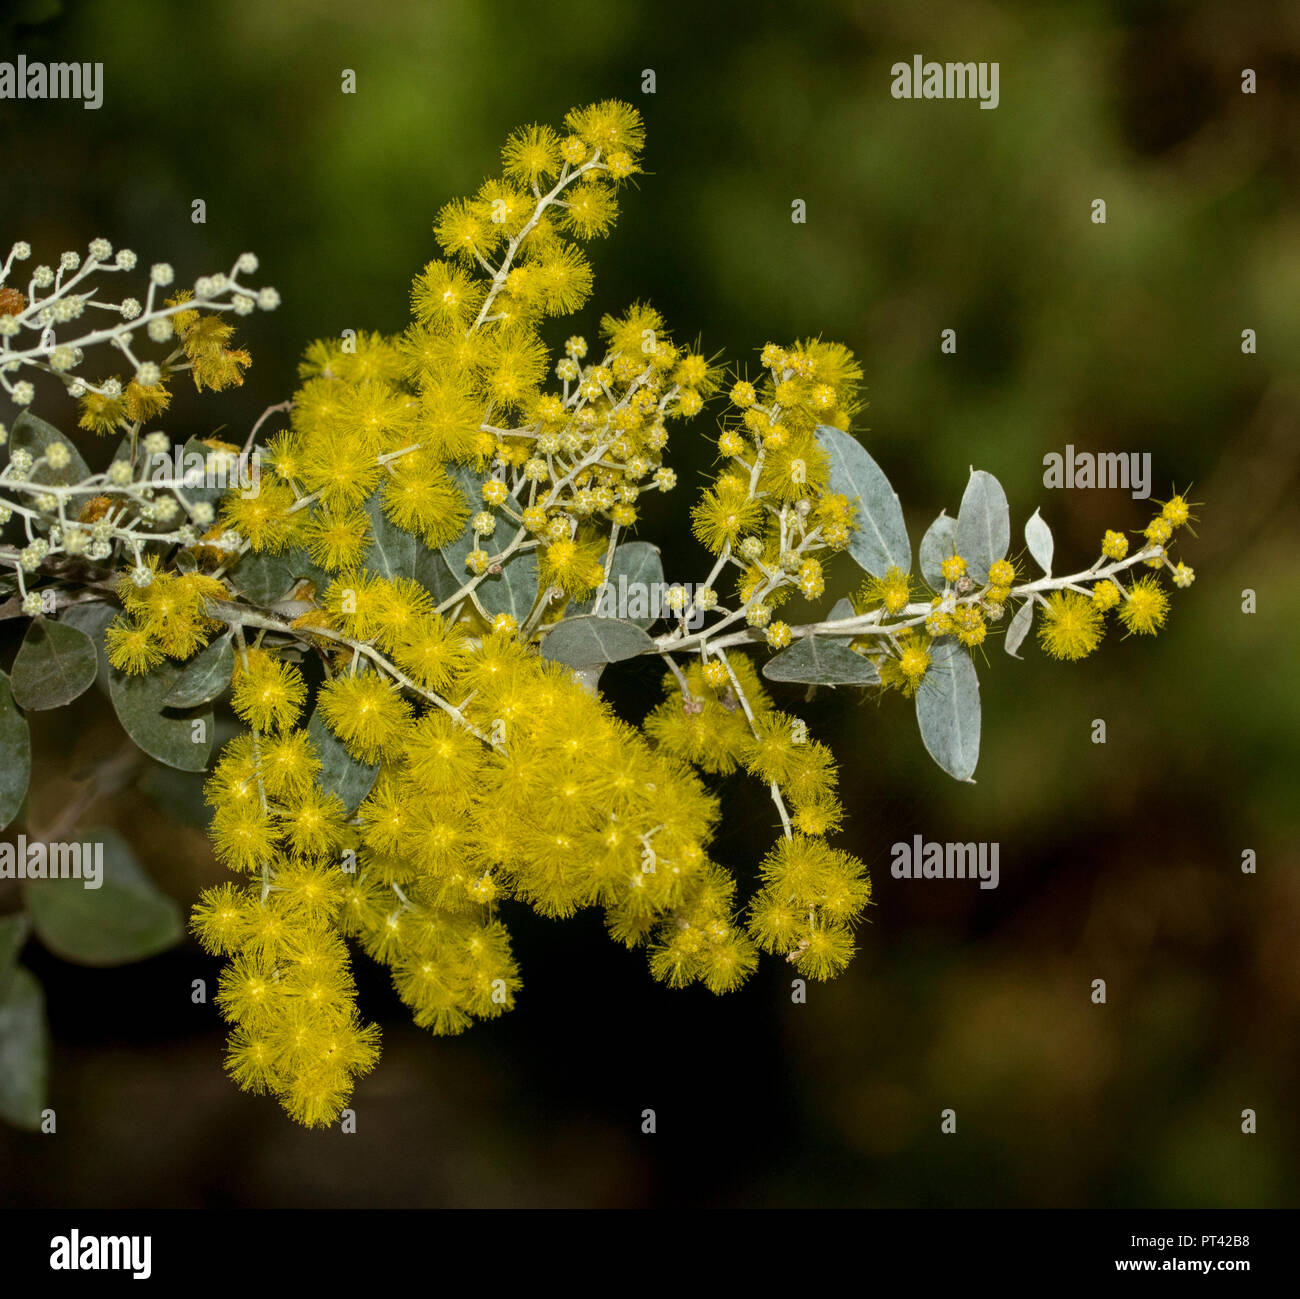 Fleurs sauvages de l'Australie, fleurs jaune vif et bleu gris feuilles d'Acacia, podalyrifolia Mount Morgan / Queensland Silver Wattle, dk fond vert Banque D'Images